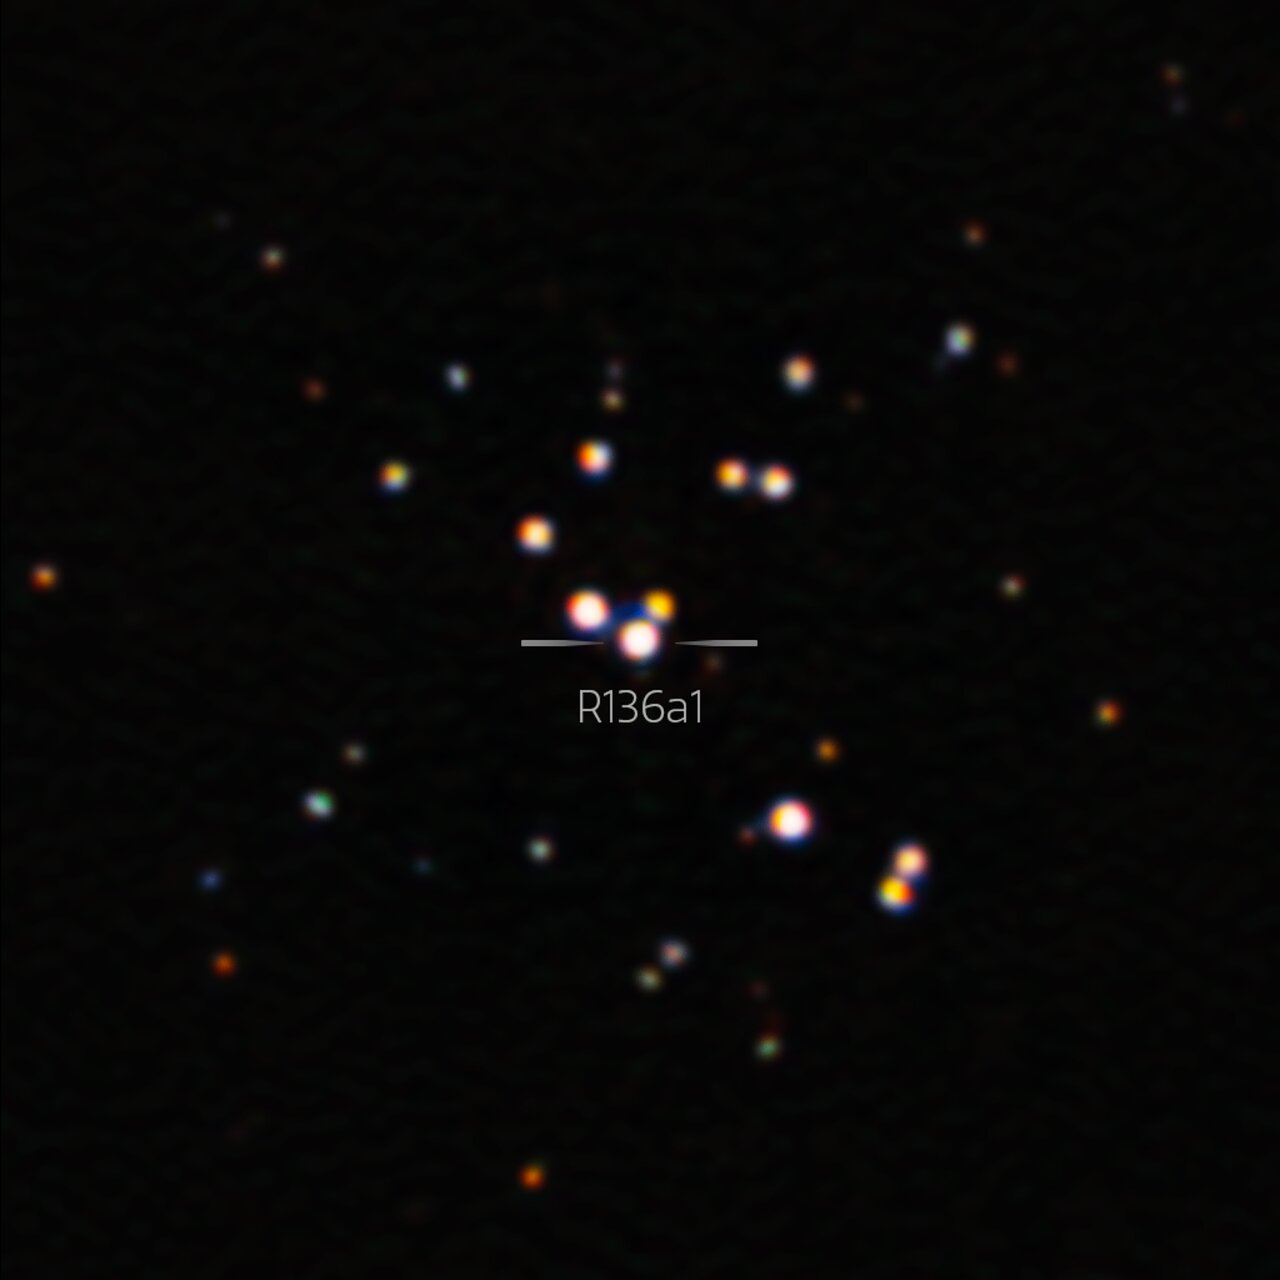 Это самое резкое изображение R136a1, крупнейшей из известных звезд. Изображение предоставлено: Международная обсерватория Близнецов/NOIRLab/NSF/AURA.